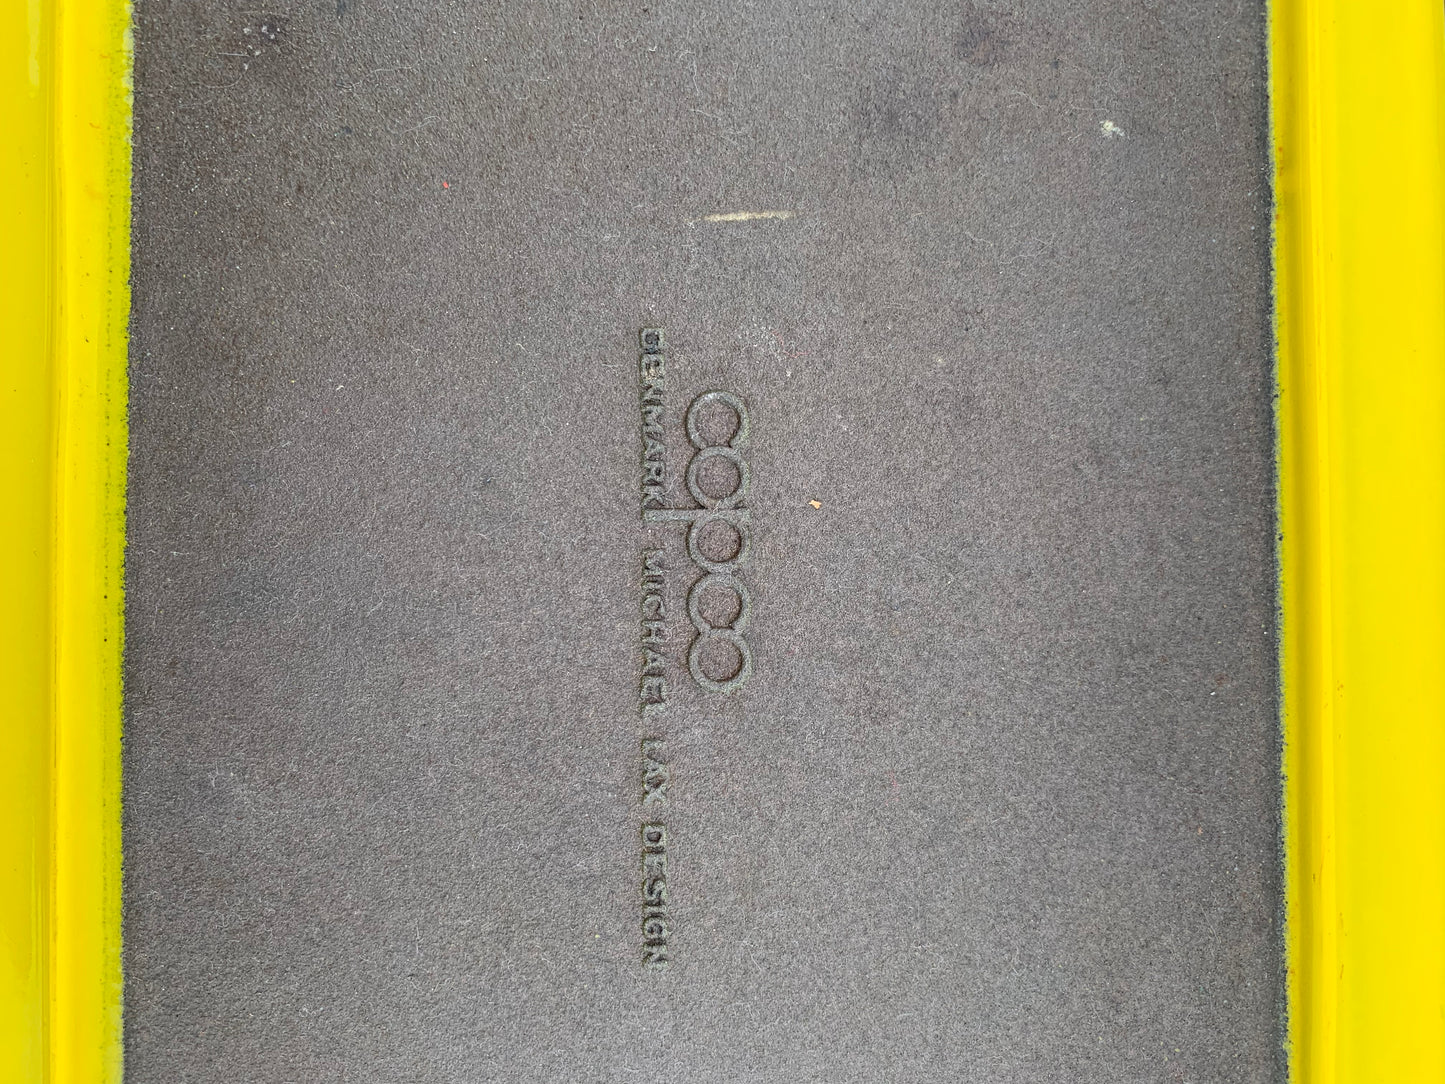 Große Copco-Schale aus Gusseisen mit Emaille